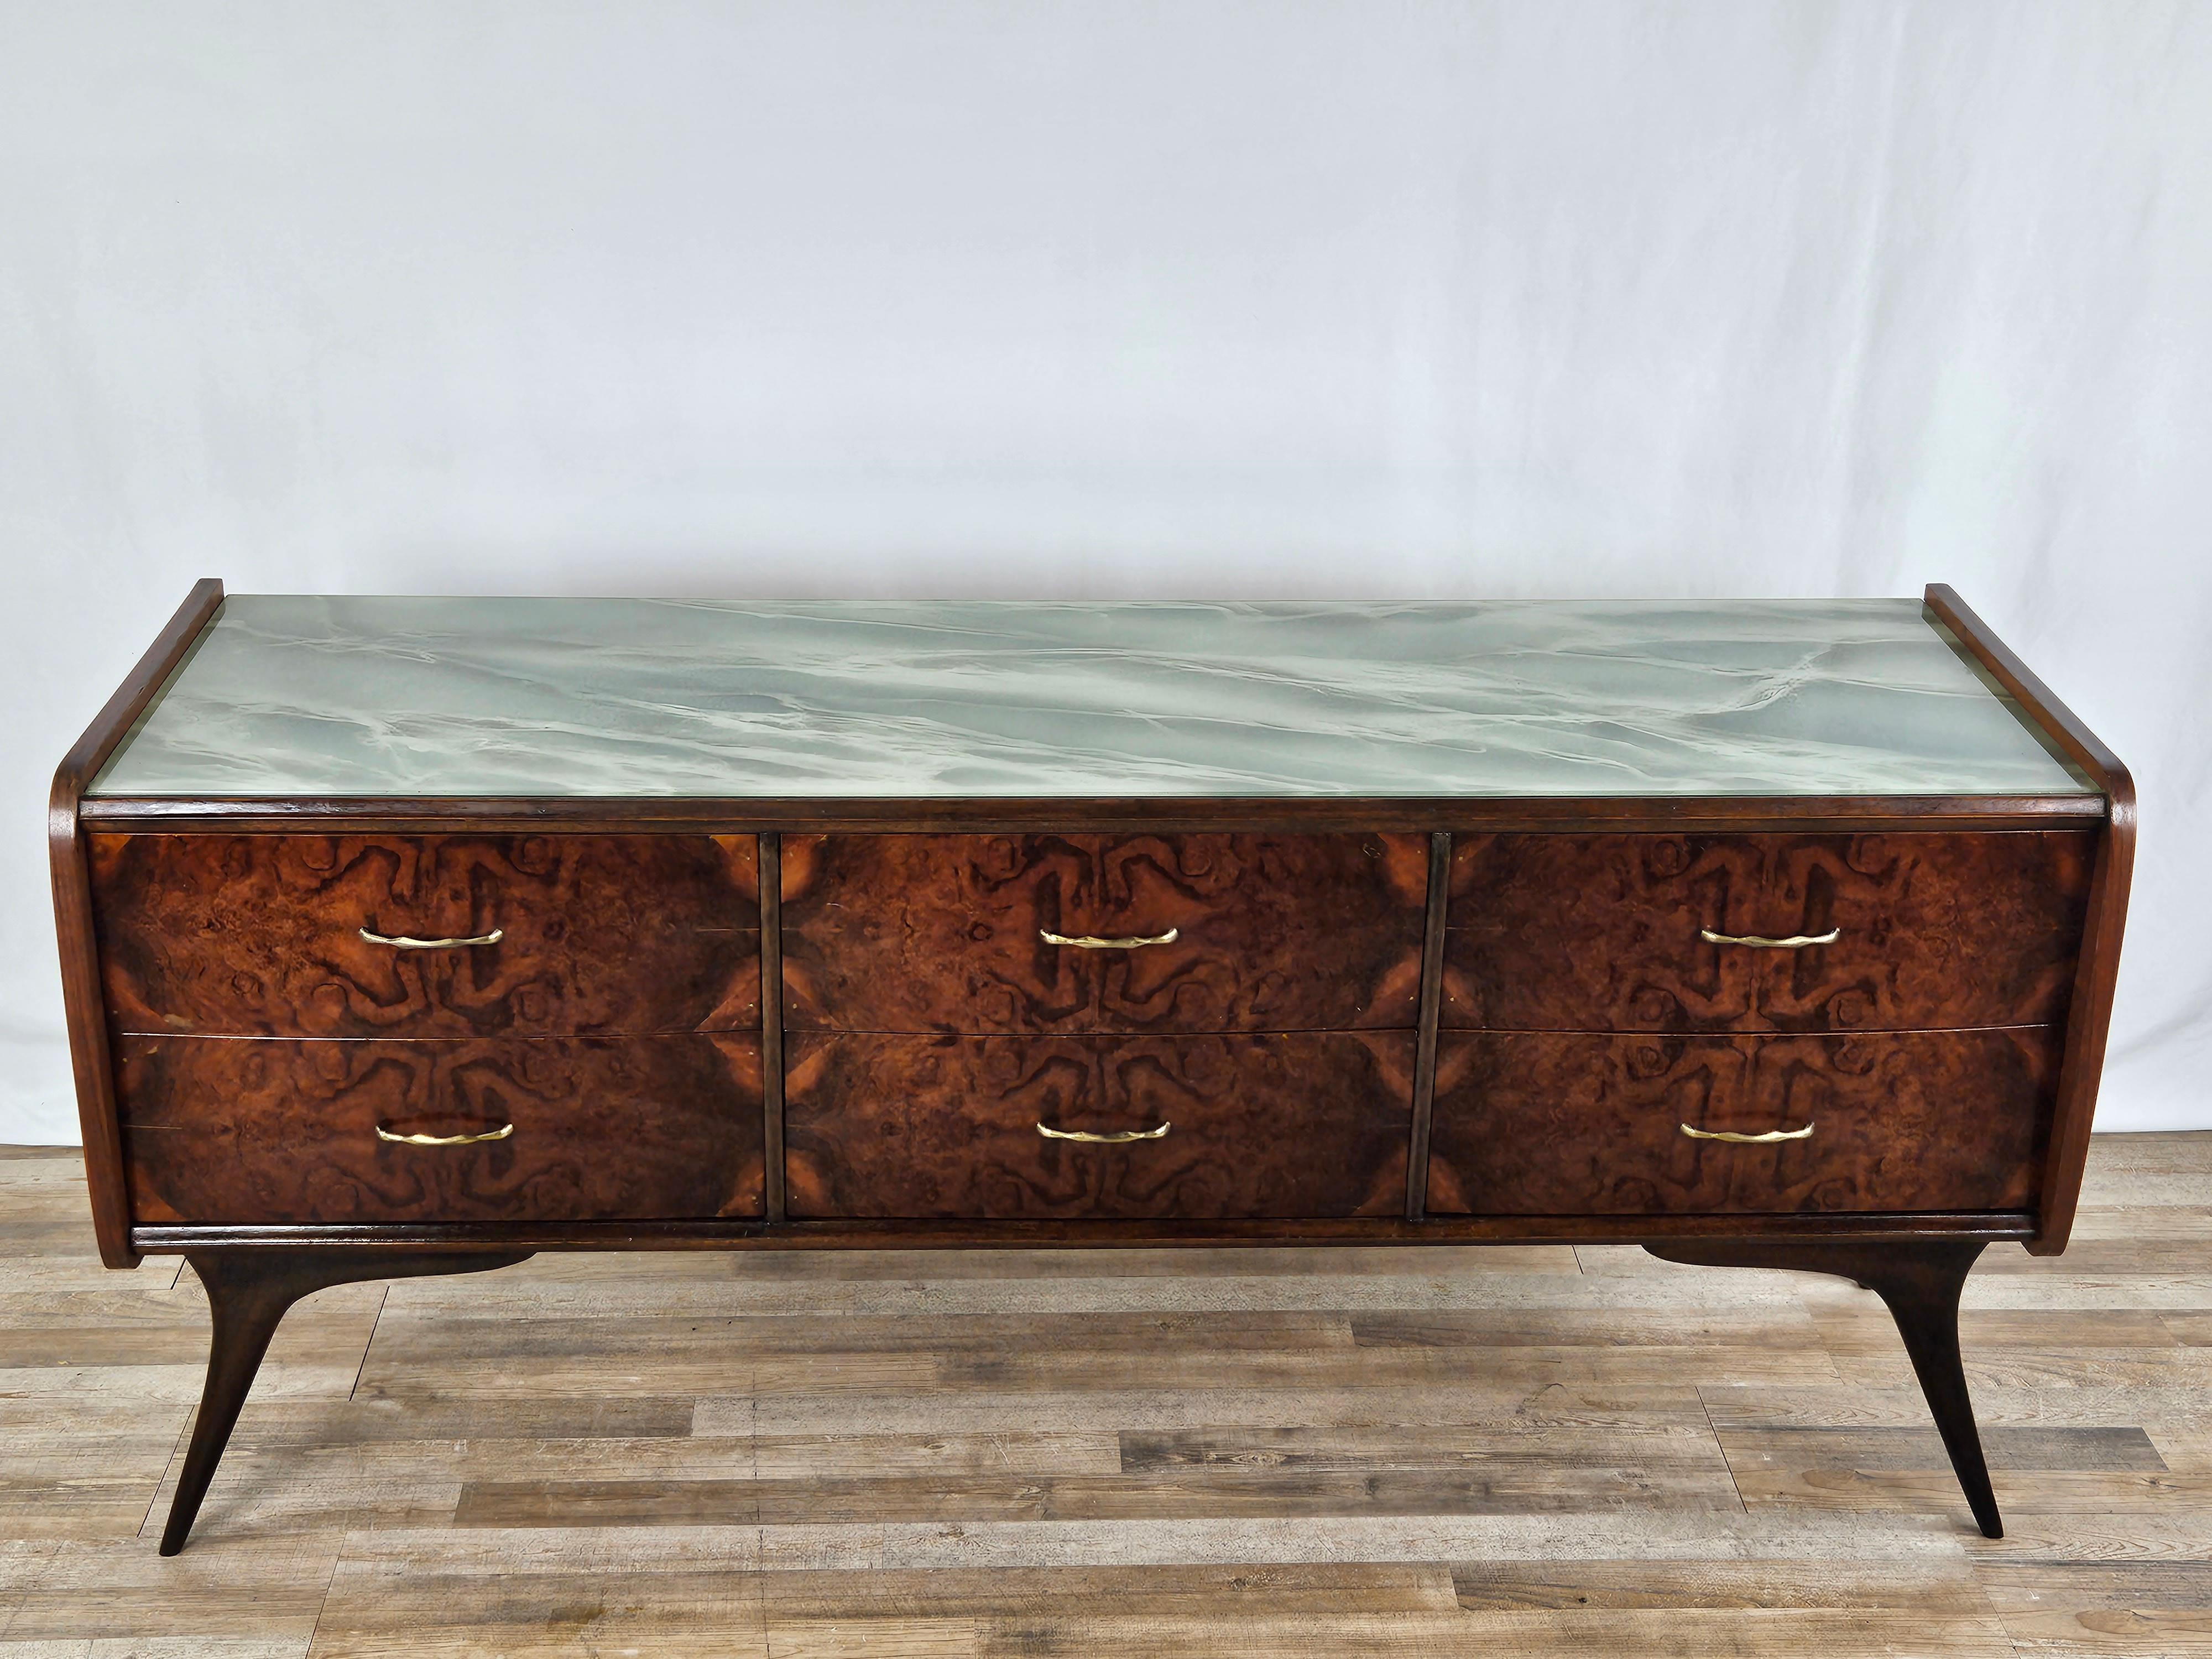 Commode moderne en bois avec six grands tiroirs robustes, décorée d'un plateau en verre sarcelle très allégorique qui donne une touche 'fraîche' et méditerranéenne au meuble.

Grâce à ses dimensions réduites et linéaires, la commode peut également